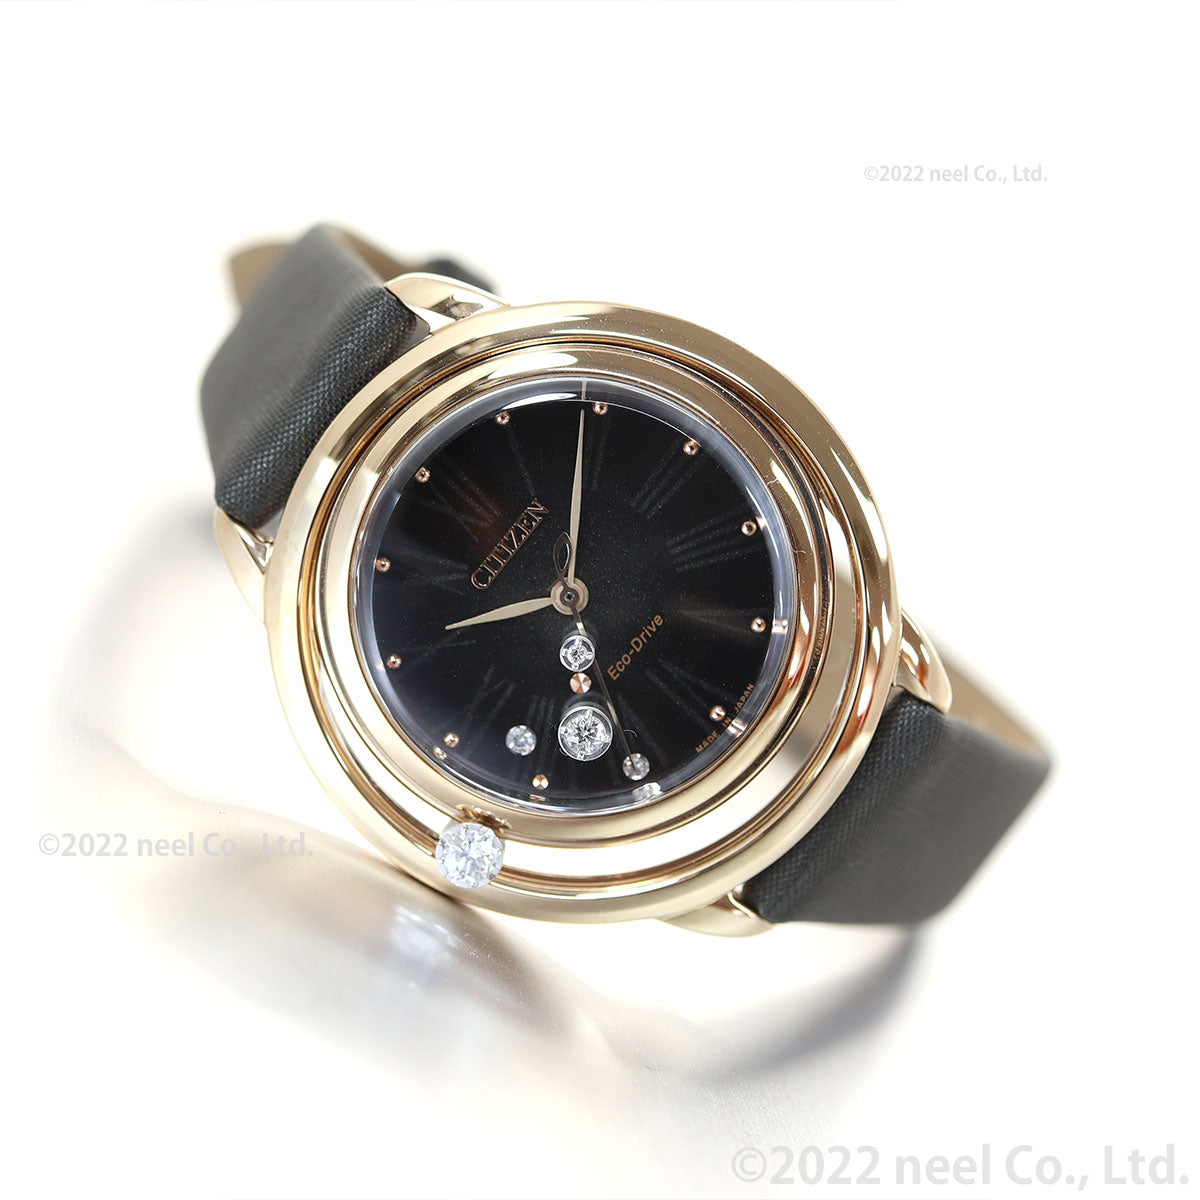 シチズン エル CITIZEN L エコドライブ Arcly Collection 限定モデル 腕時計 レディース アークリーコレクション EW5522-46E